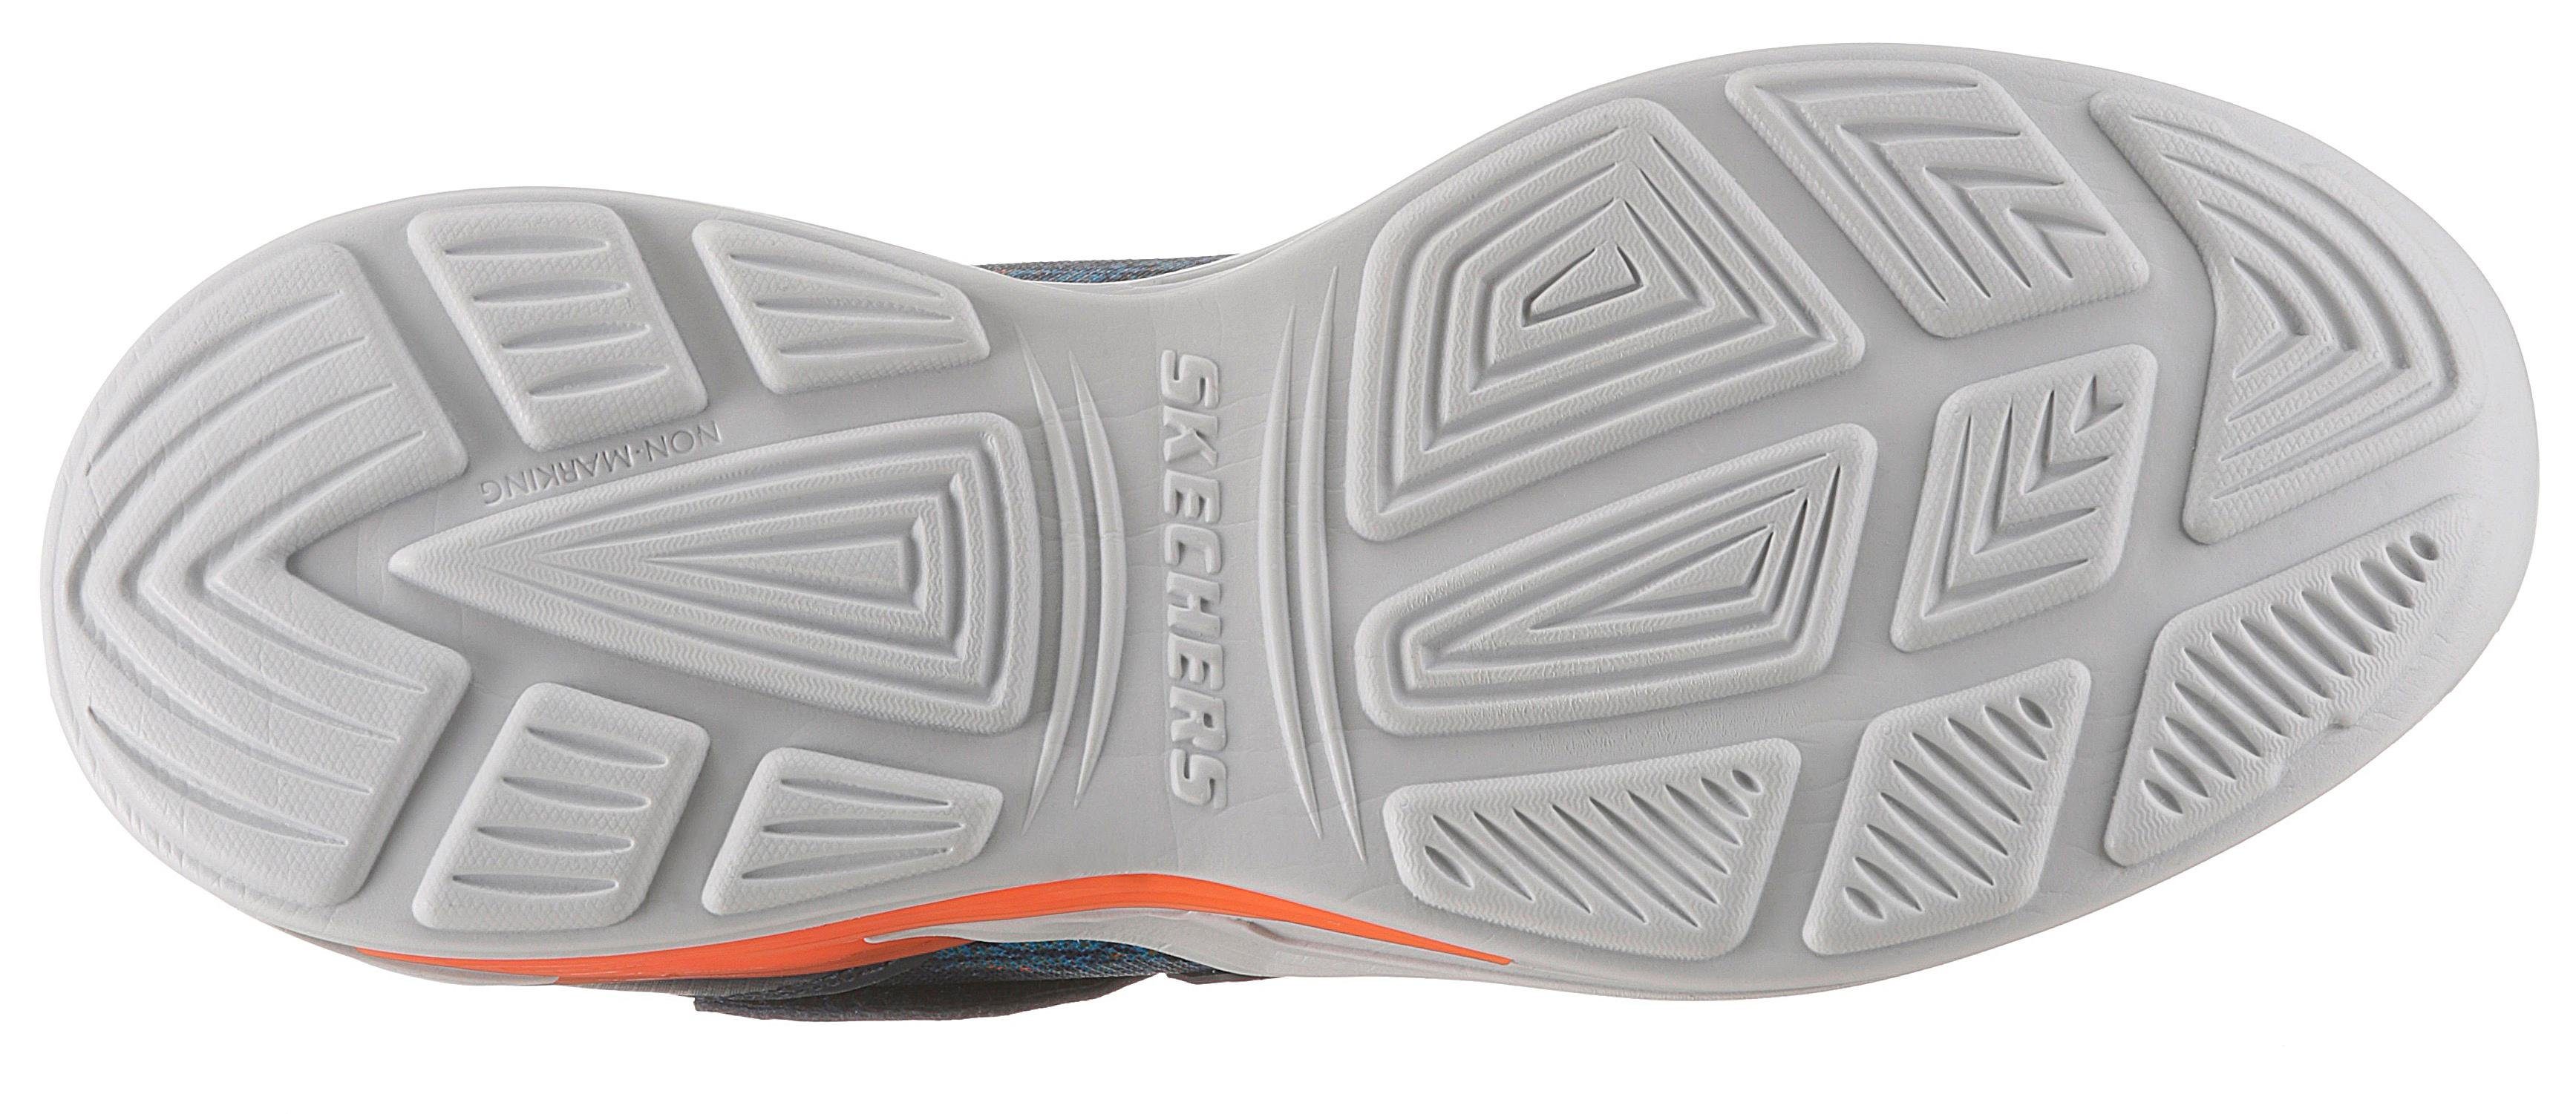 Skechers Kids Blinkschuh Erupters III Sneaker mit und navy-orange Gummiband Klettverschluss